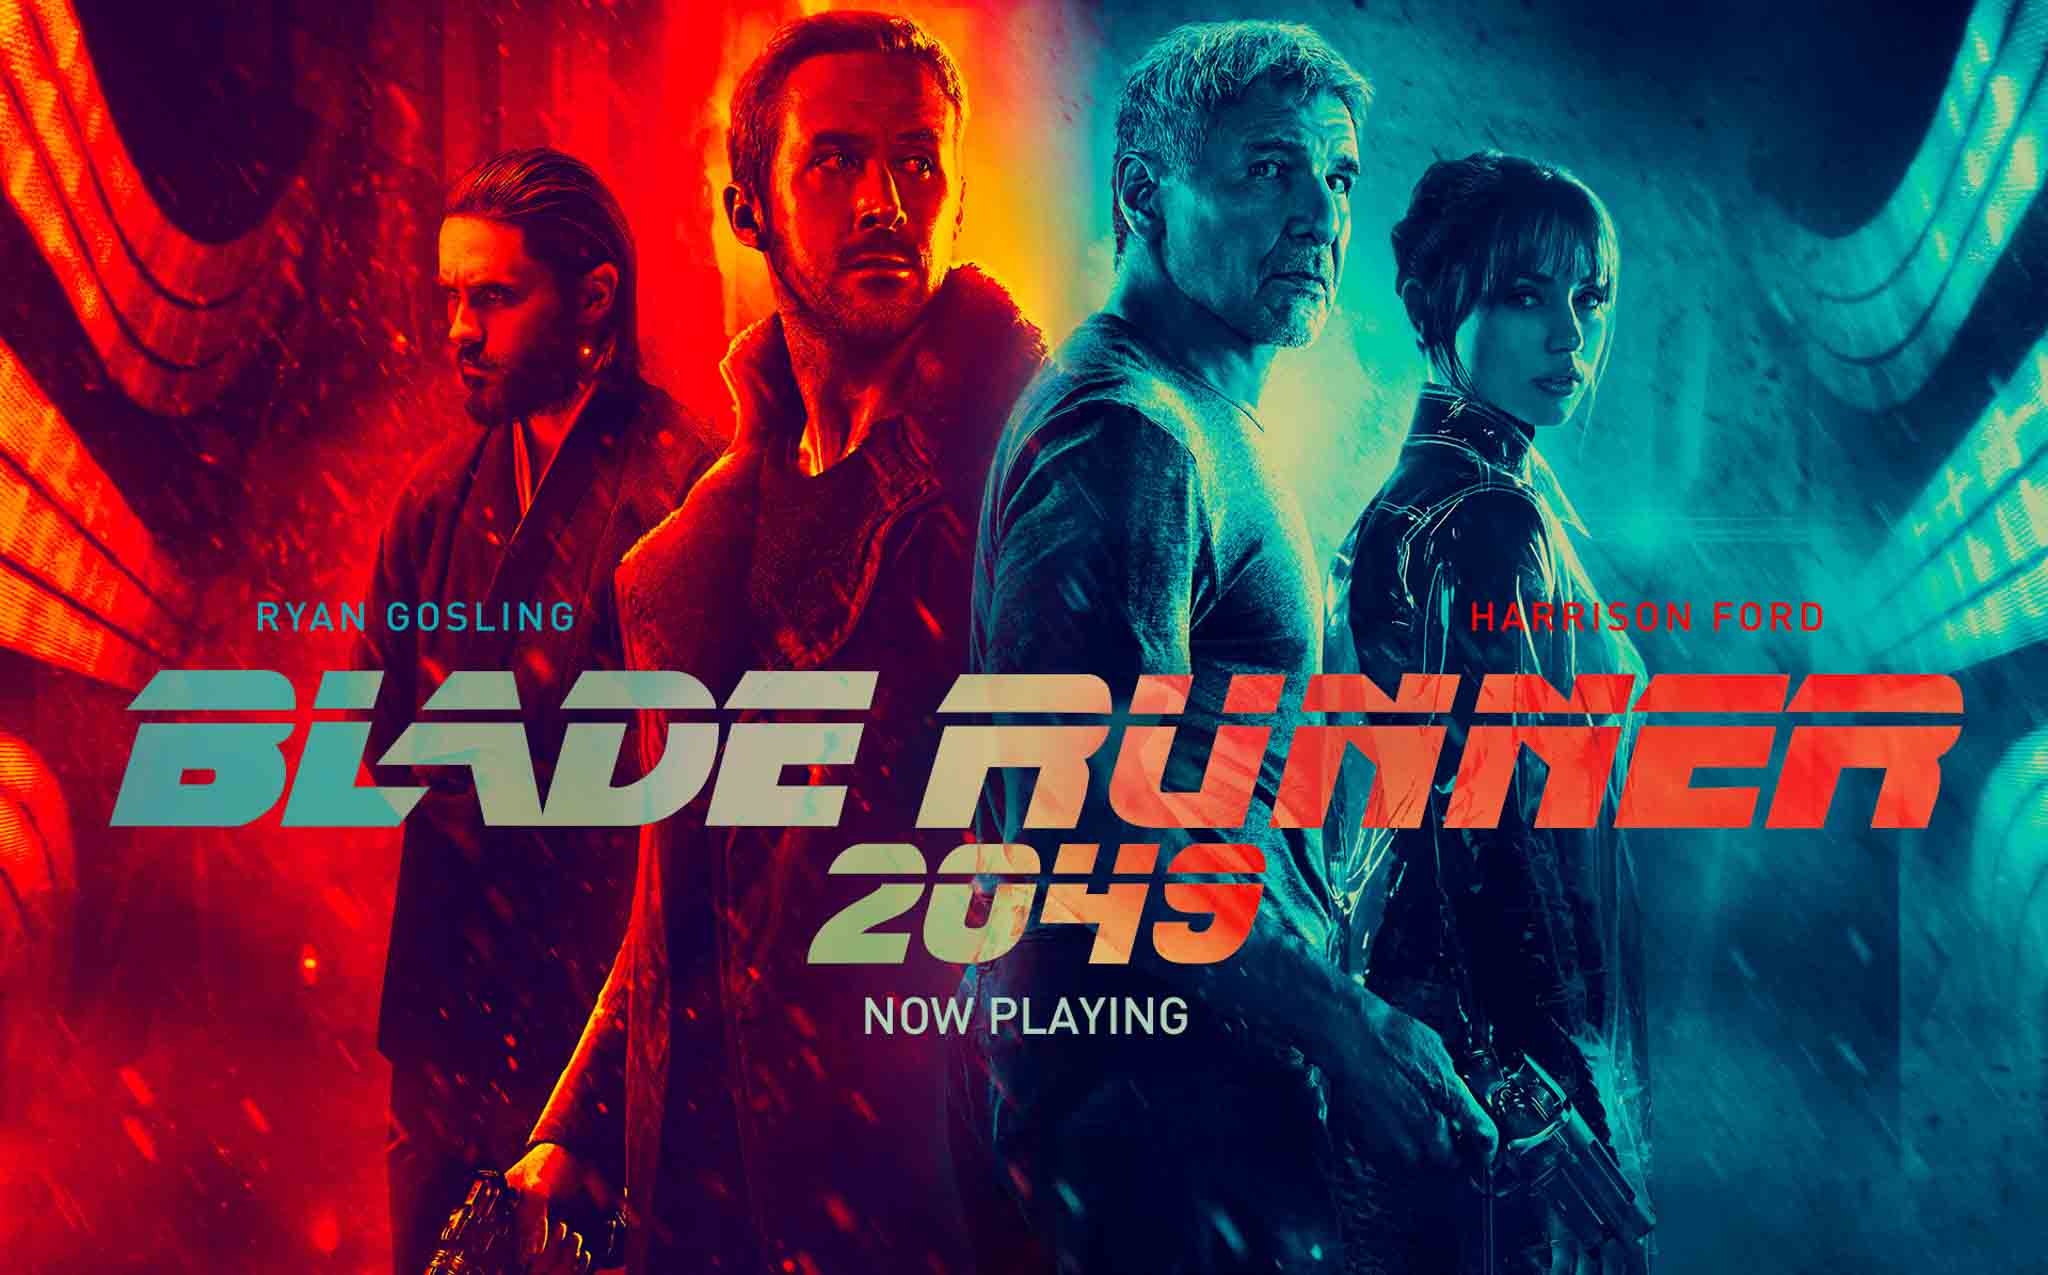 [Đánh giá phim] Blade Runner 2049: Nối tiếp câu chuyện kinh điển bằng một tuyệt tác